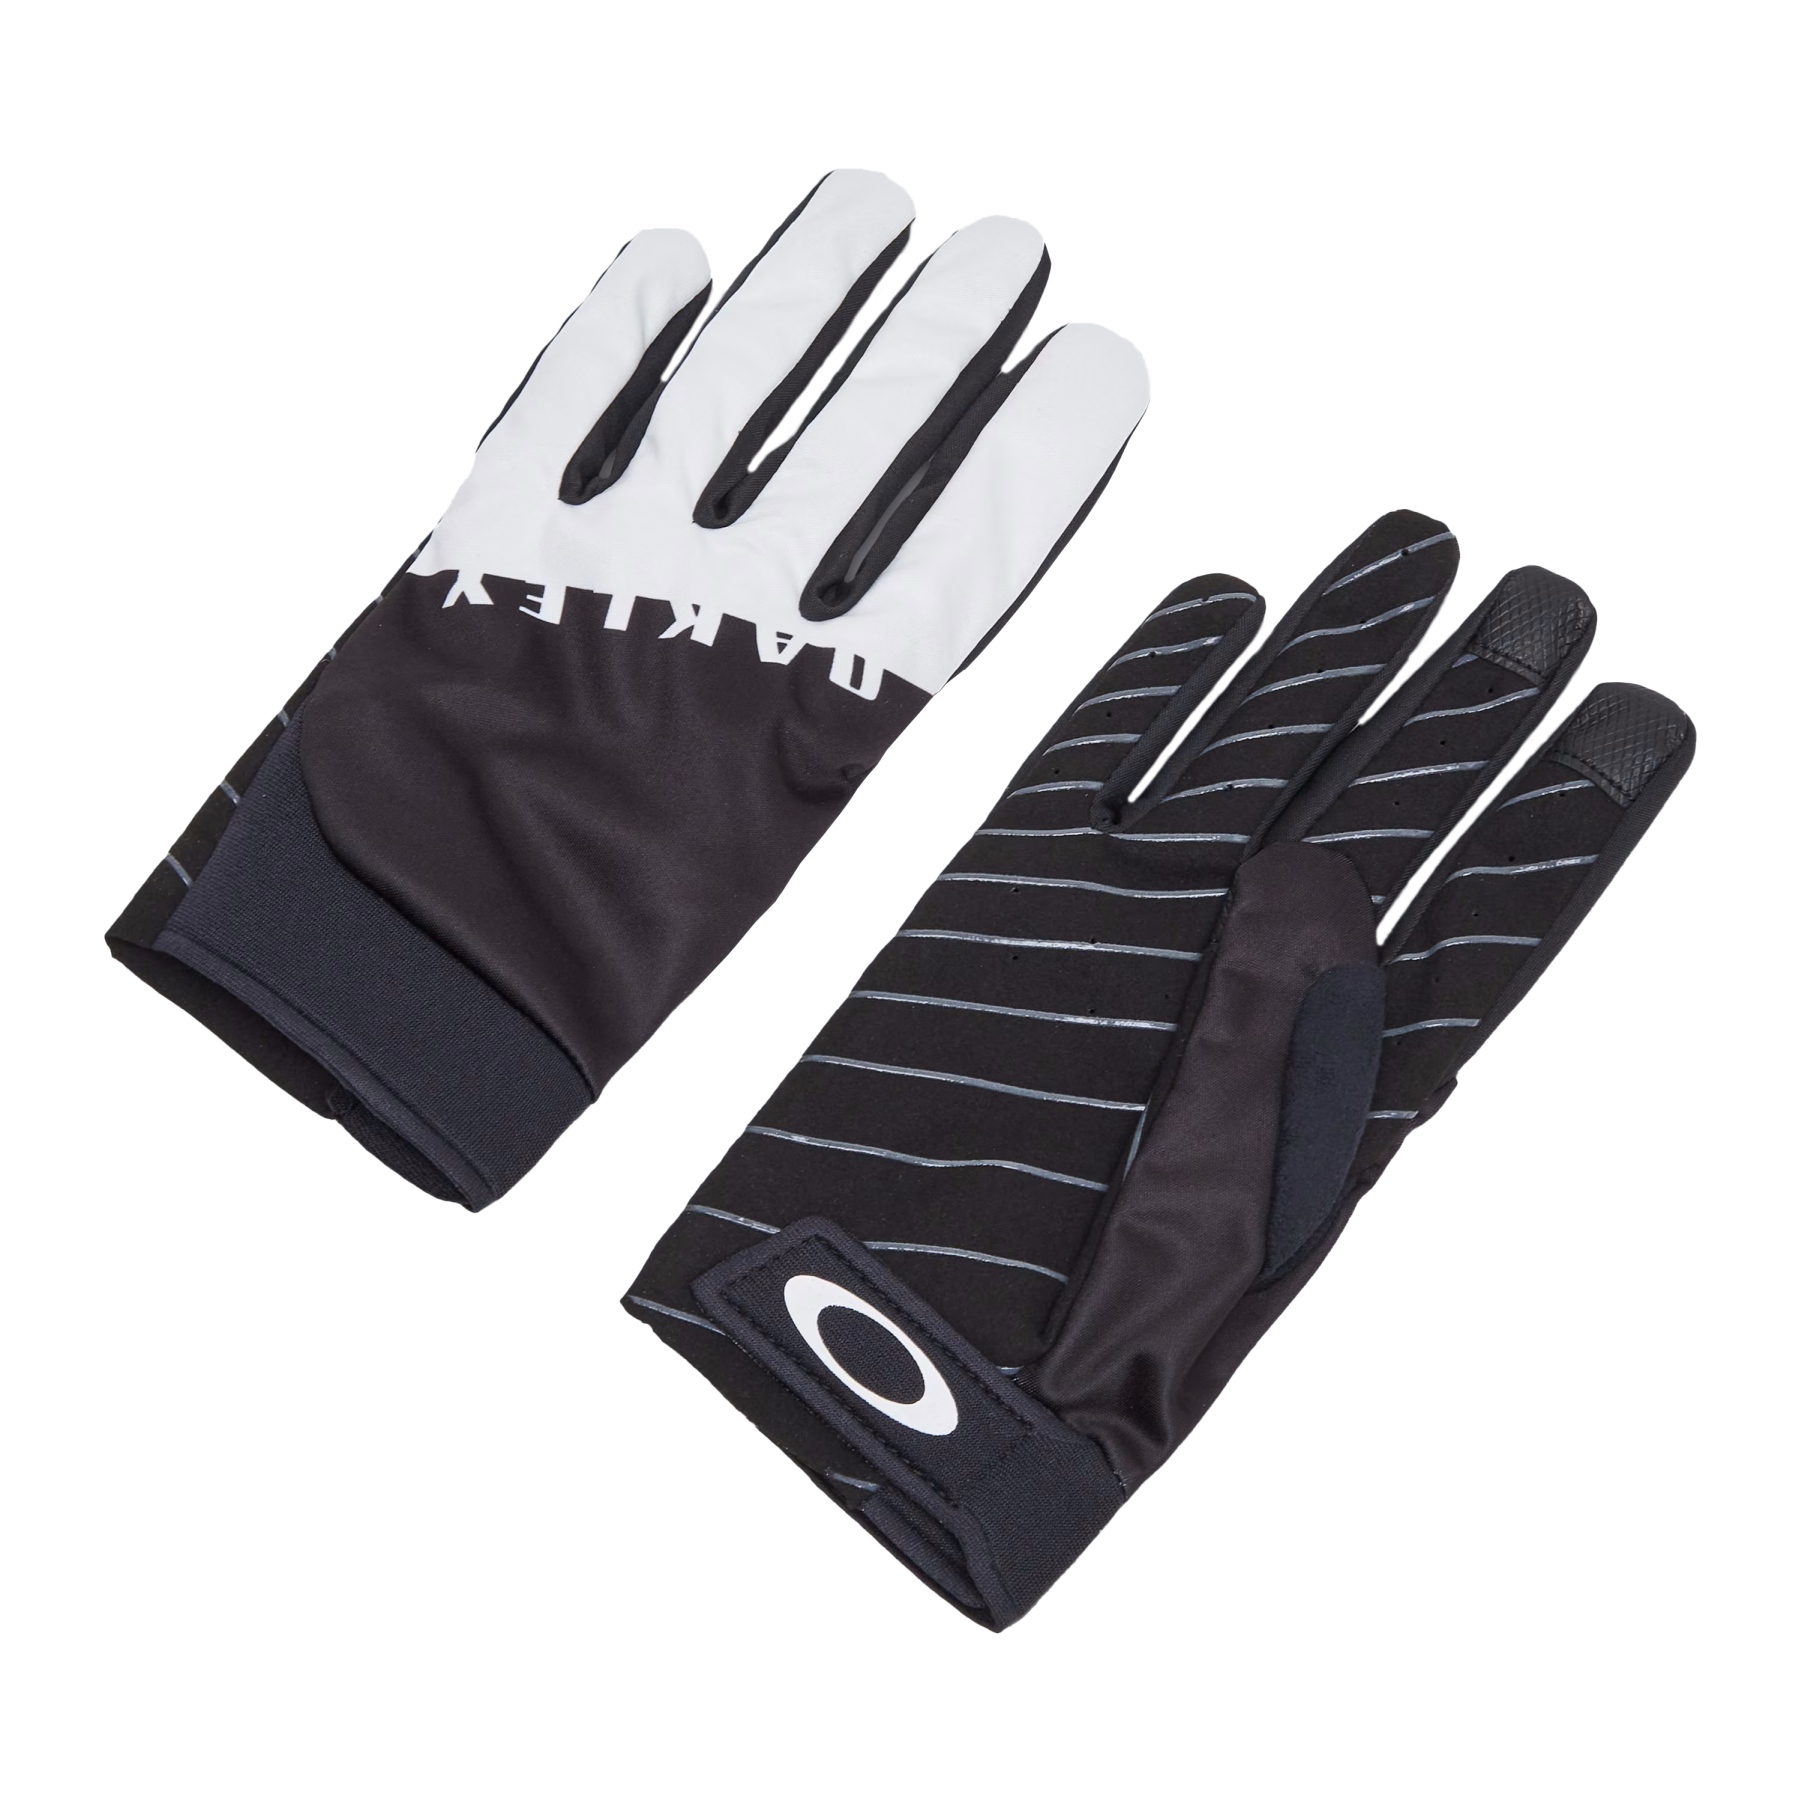 Productfoto van Oakley Icon Classic Road Handschoenen - Zwart/Wit